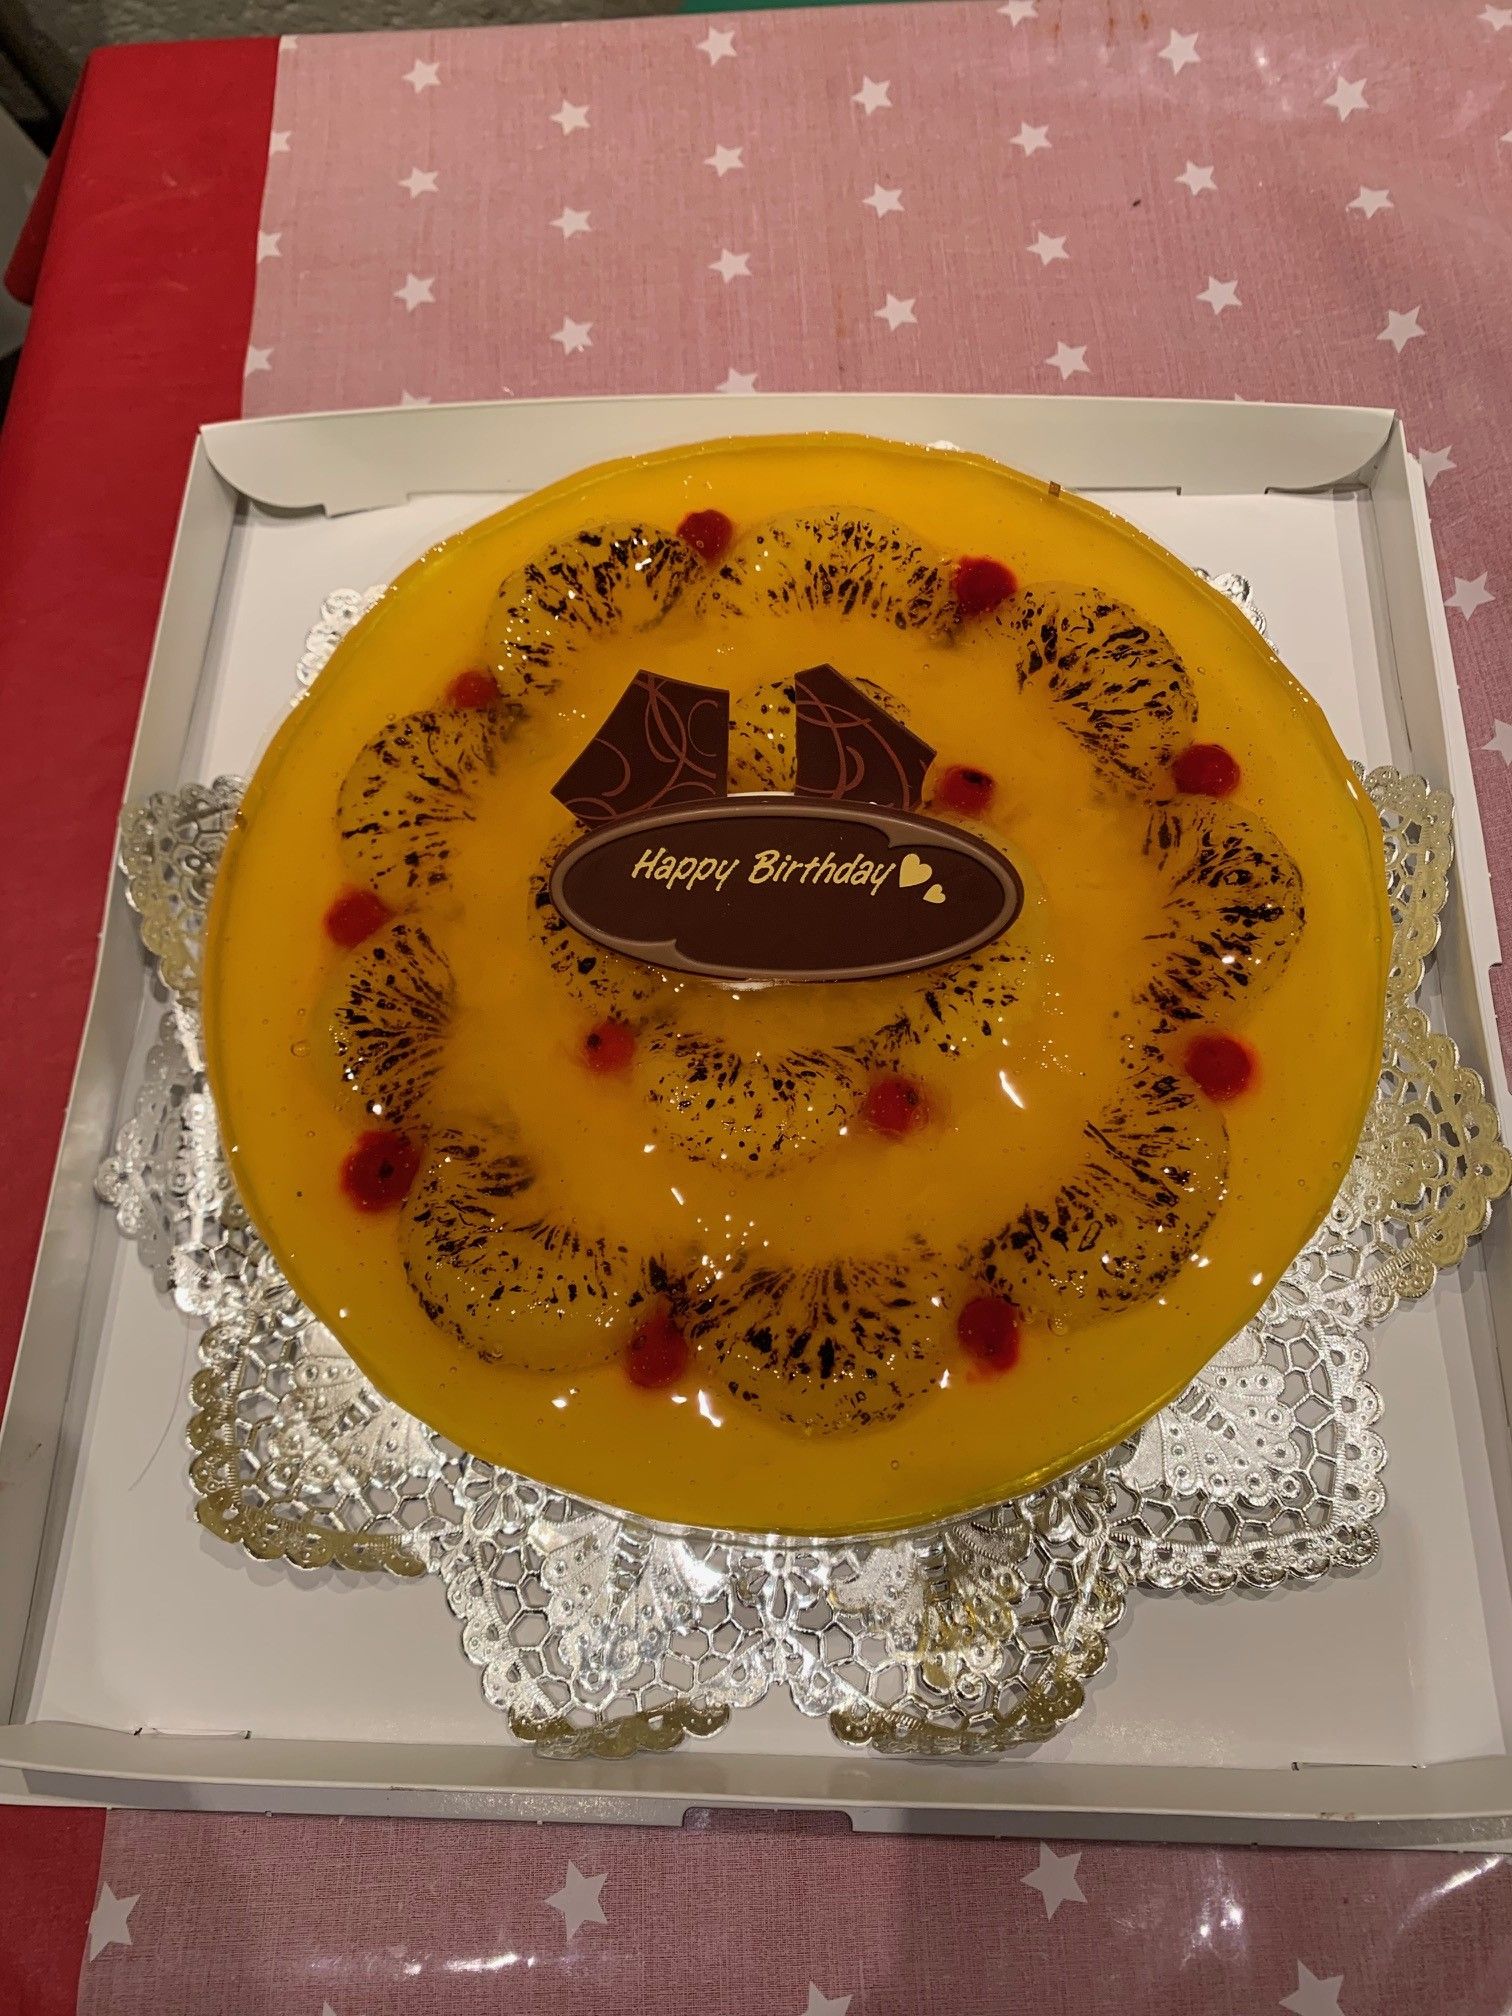 バースデーケーキ 宅配 川崎 横浜 デコレーションケーキのデリバリーショップ 楽天ブログ